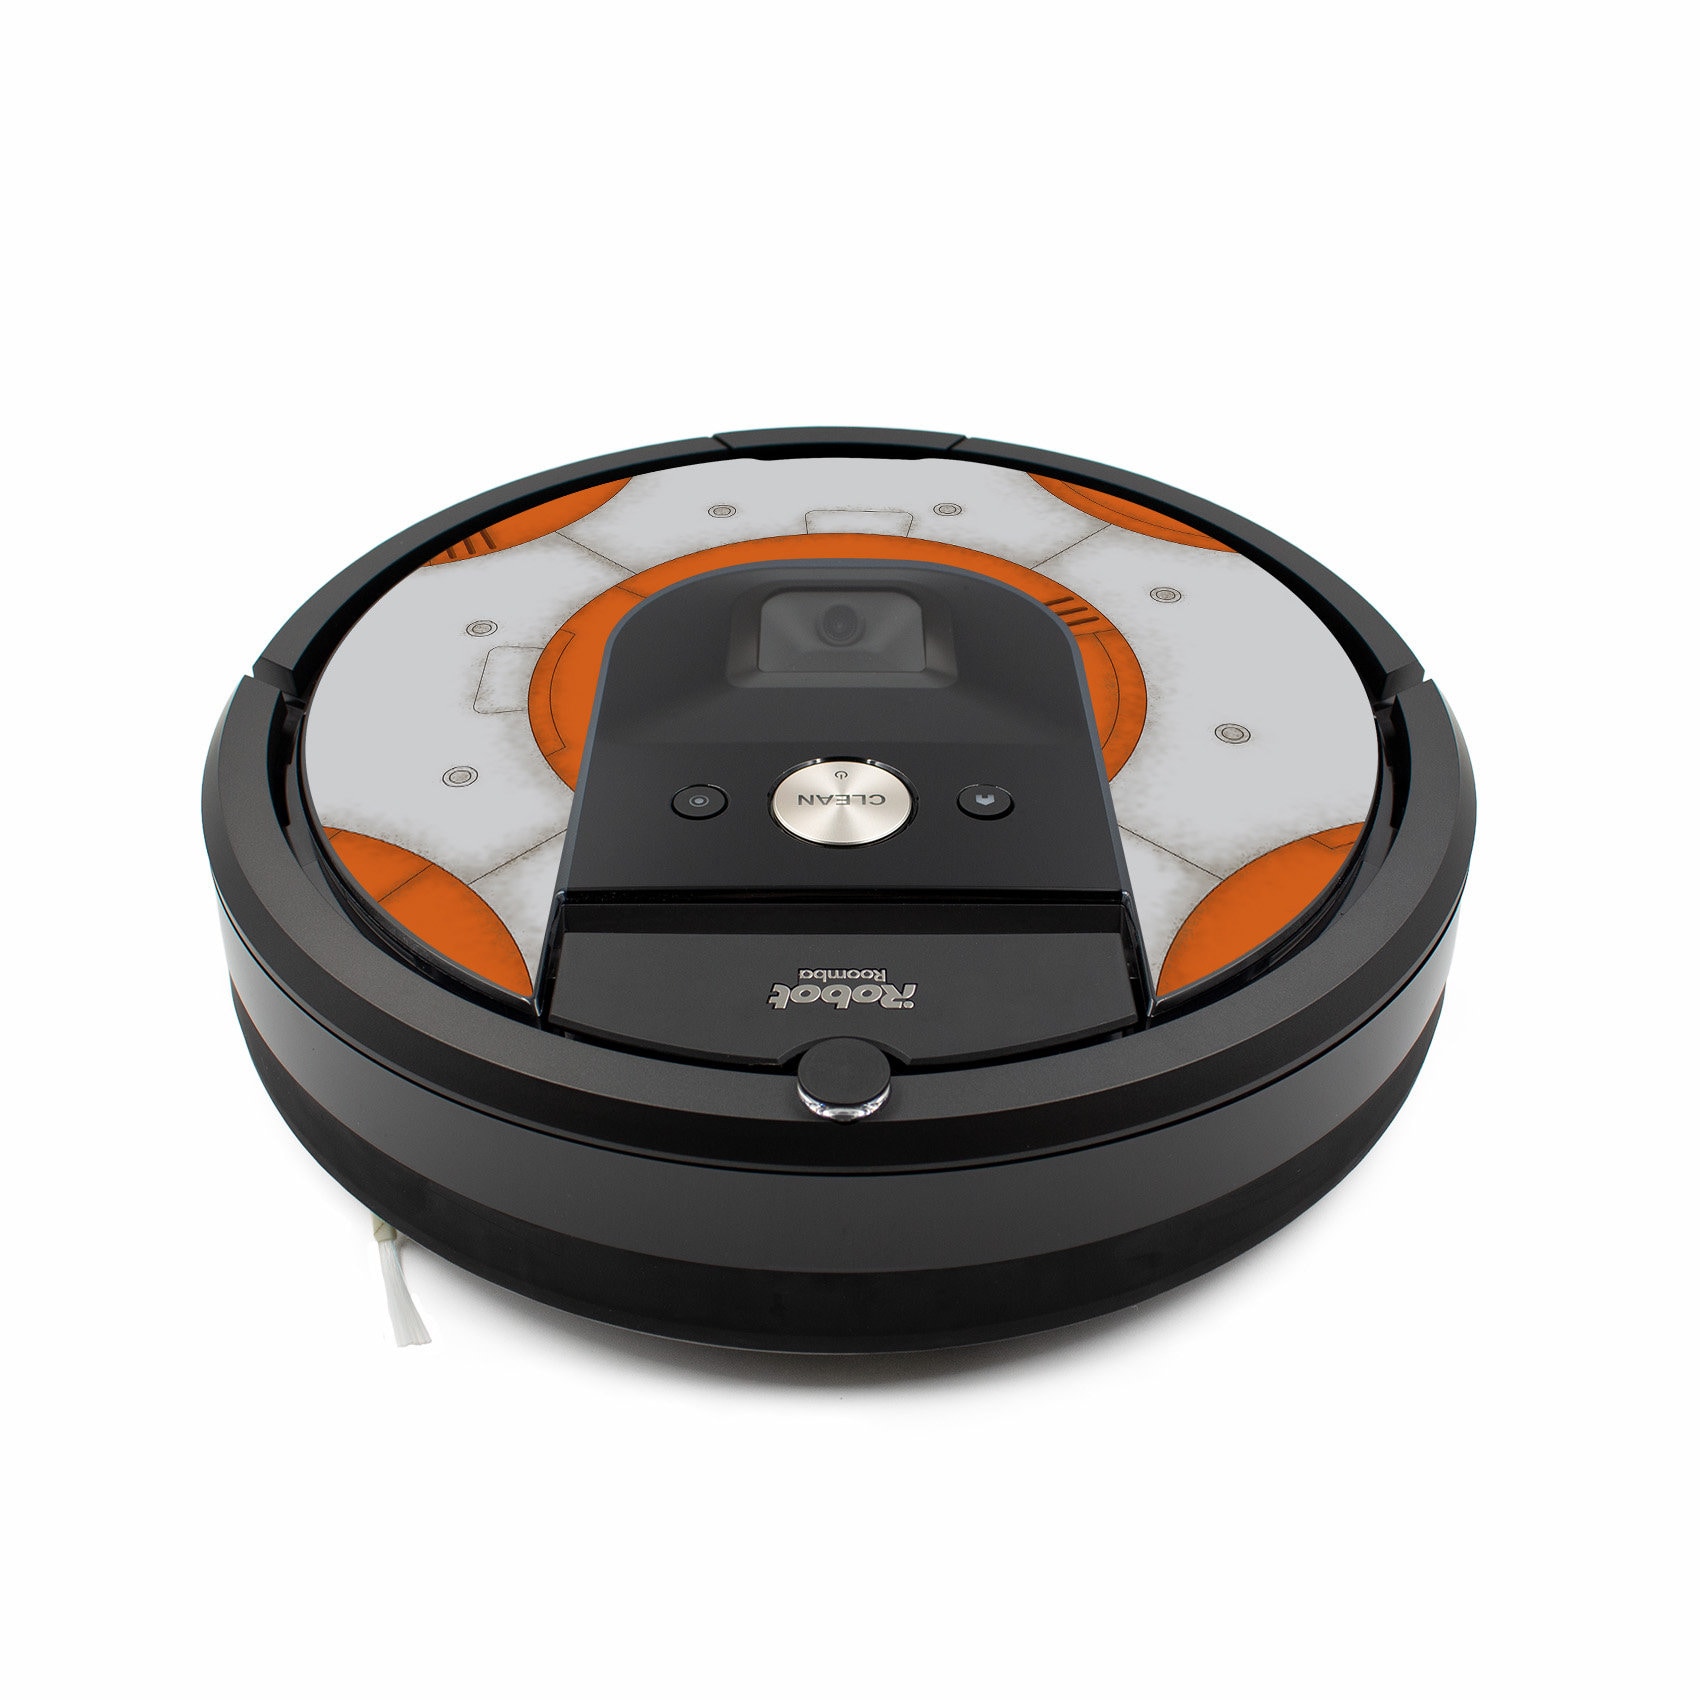 kaldenavn pistol frekvens Cover for Vacuum Robot Irobot Roomba 981 droid - Etsy